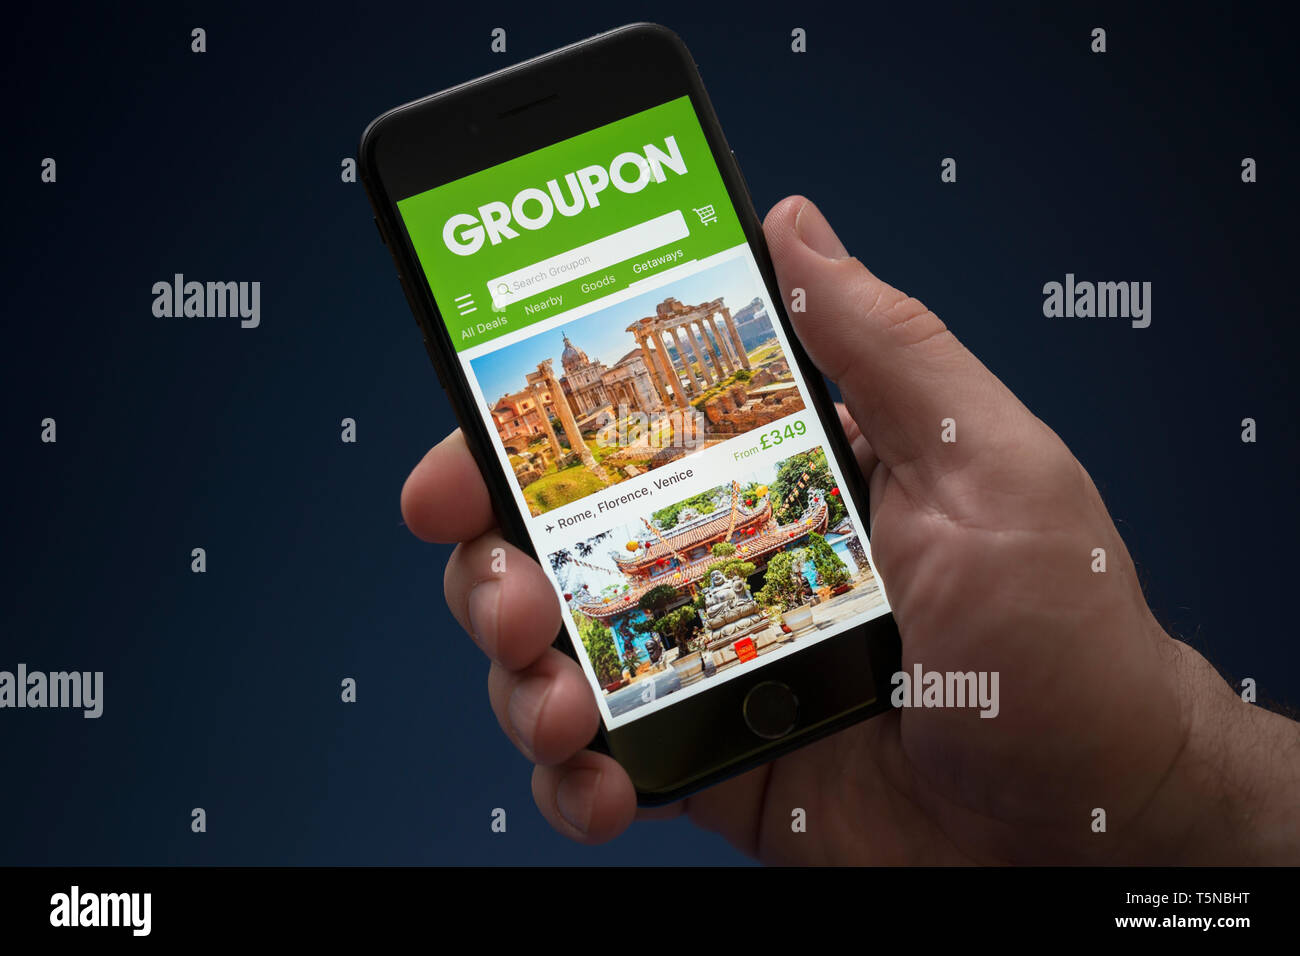 Un uomo guarda al suo iPhone che visualizza il logo Groupon (solo uso editoriale). Foto Stock